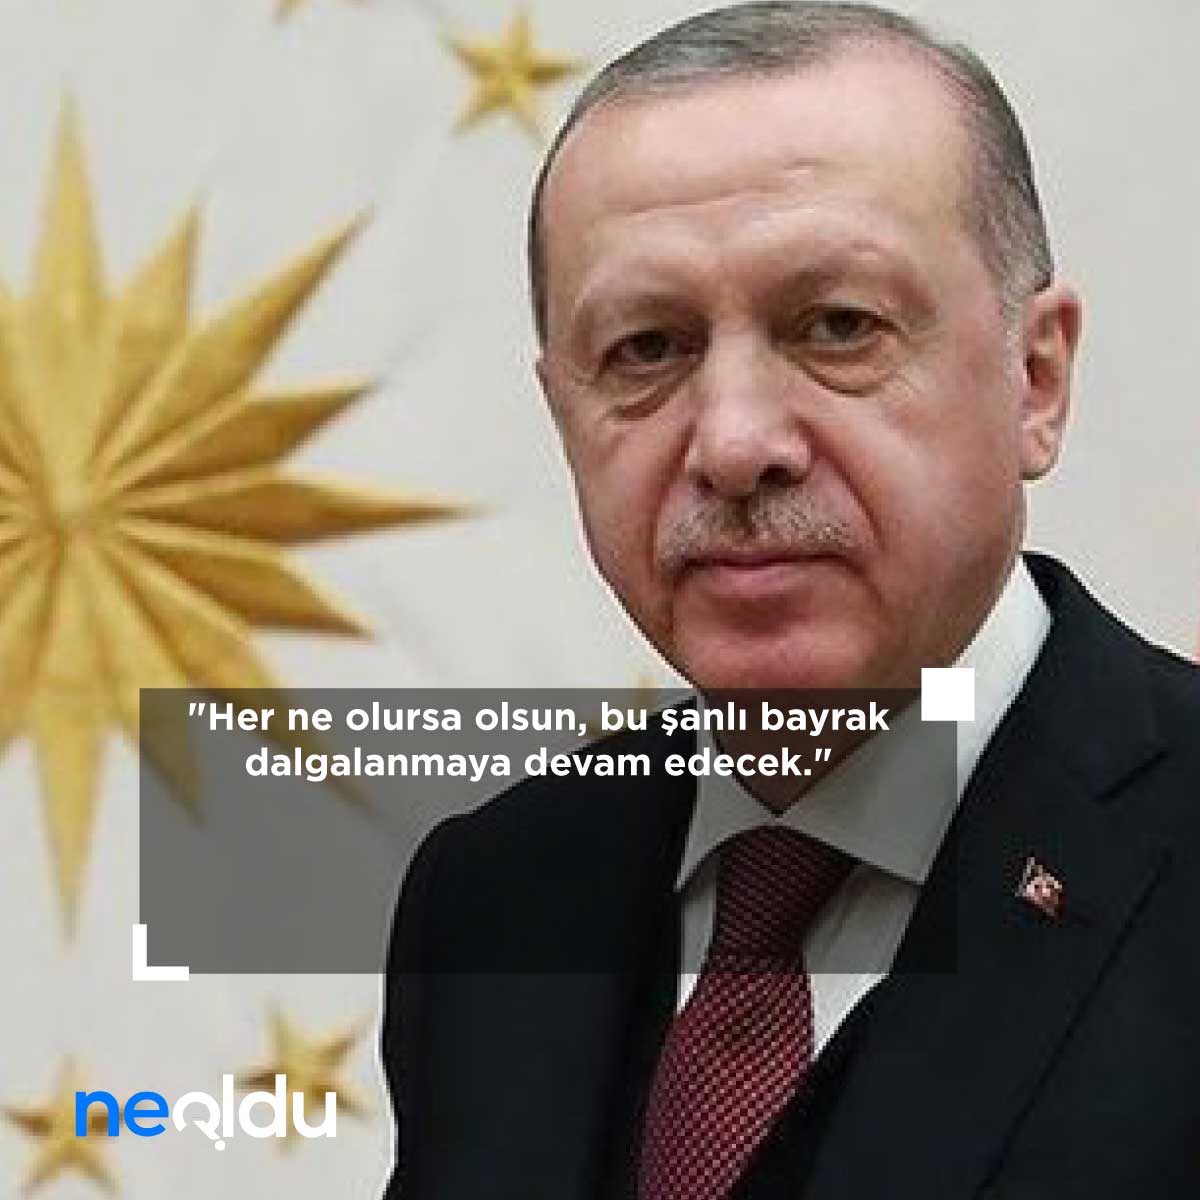 Recep Tayyip Erdoğan Sözleri